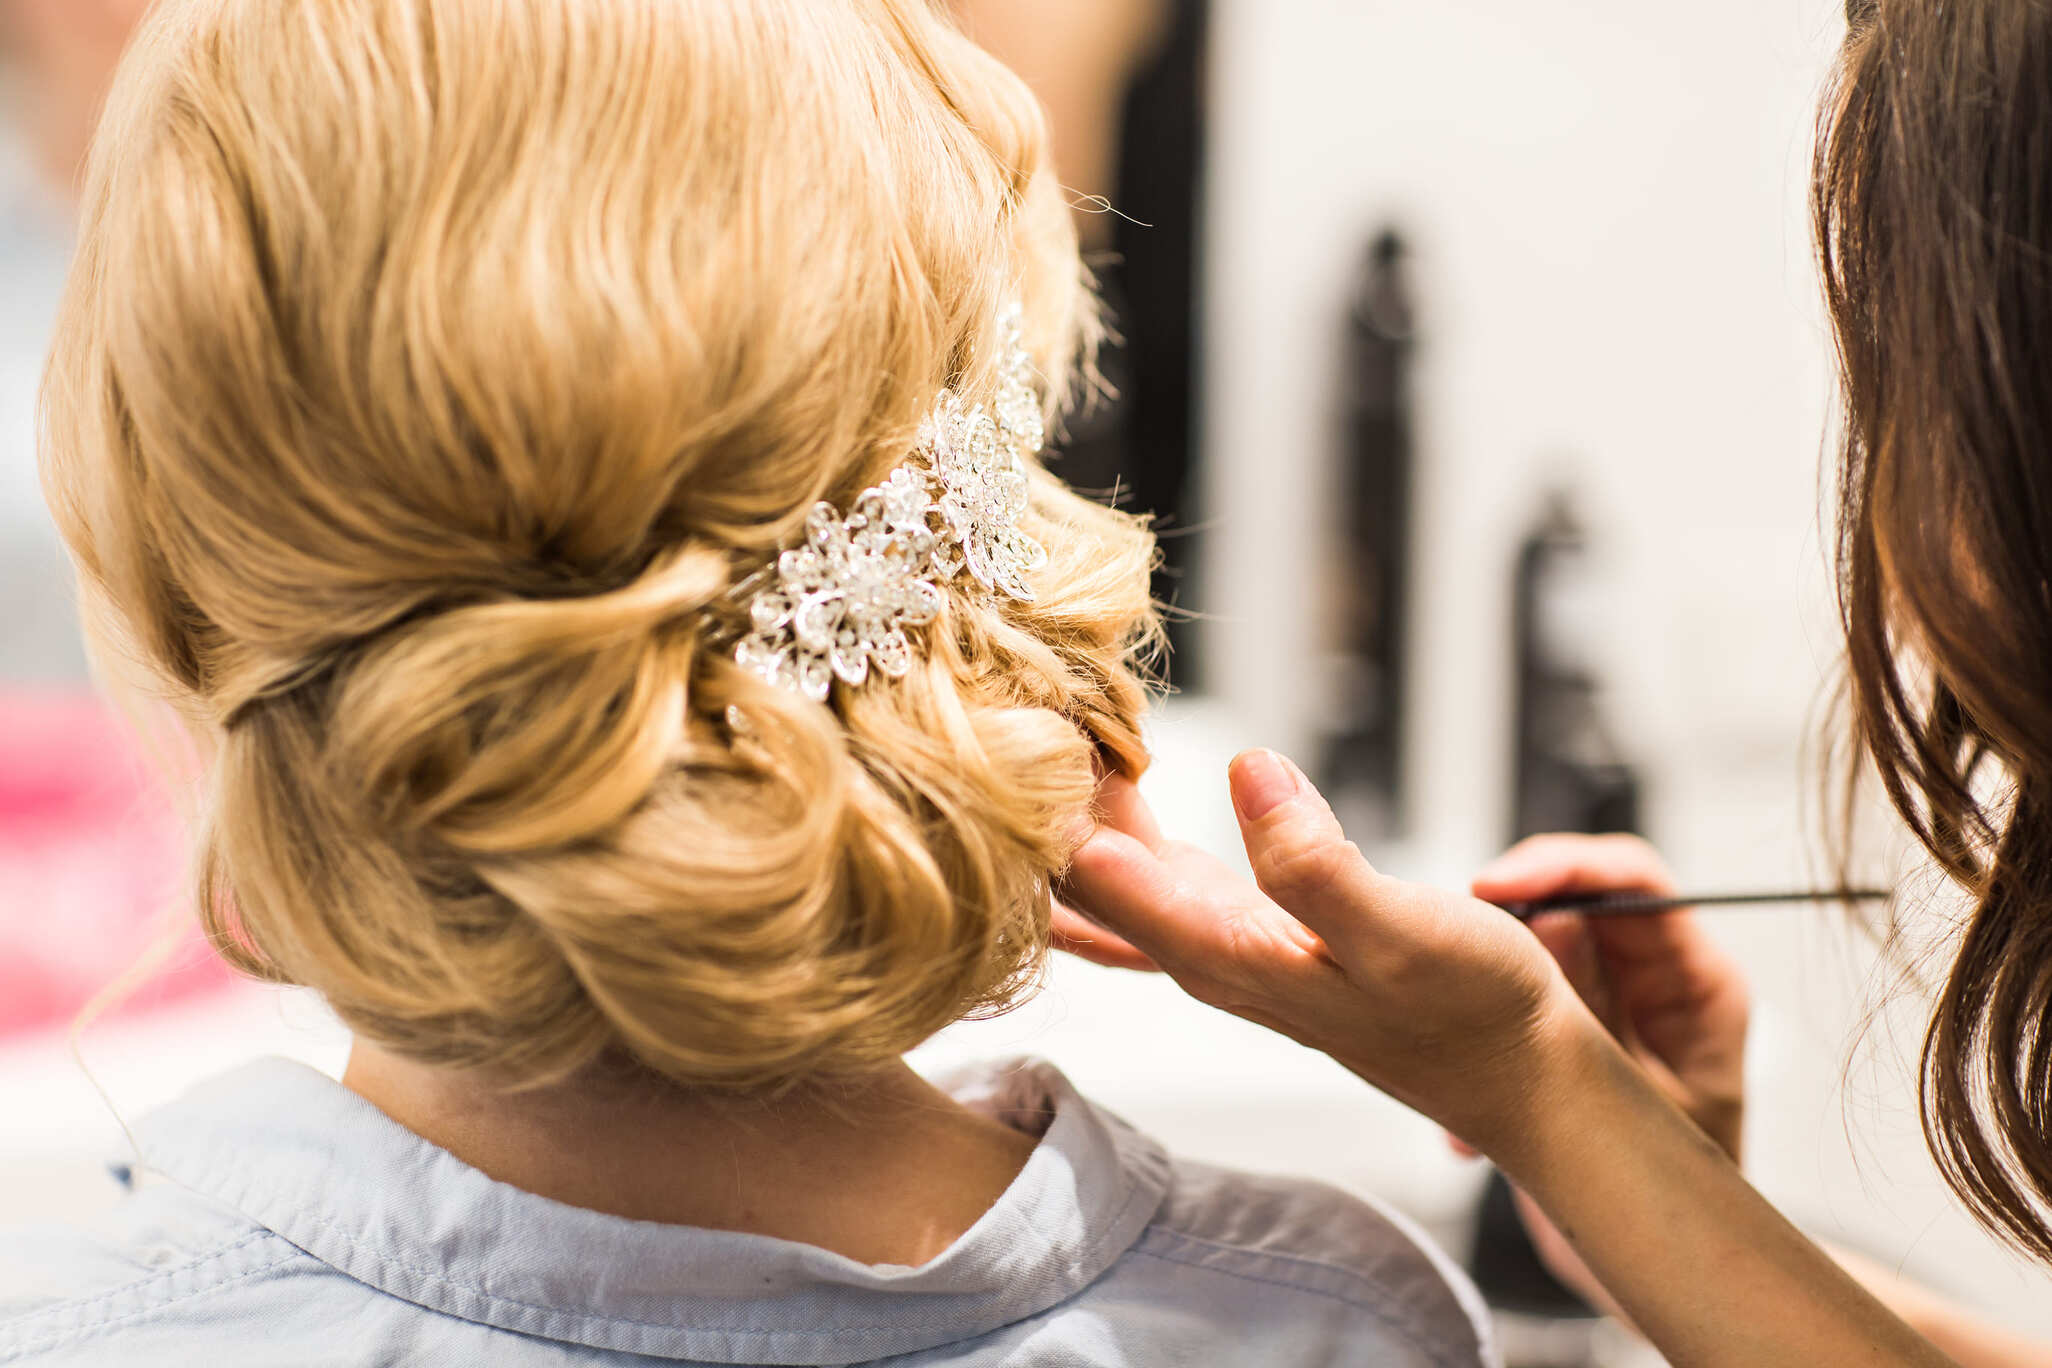 Detalle de un peinado de boda con accesorio brillante en el cabello rubio de una persona.